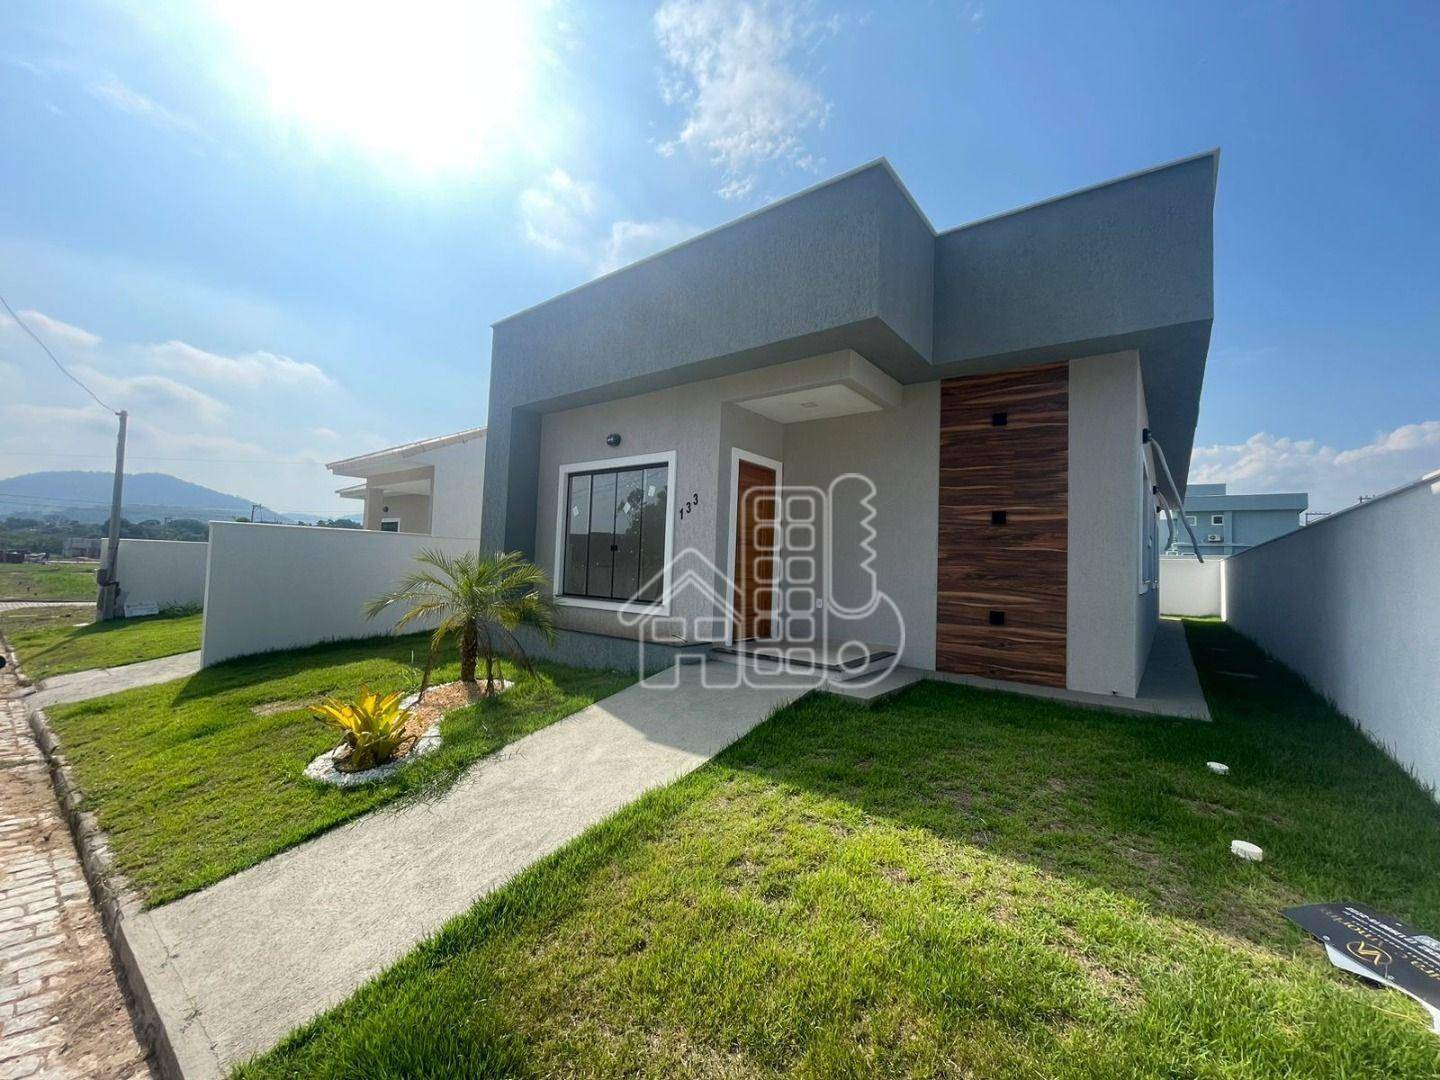 Casa com 3 dormitórios à venda, 99 m² por R$ 550.000,99 - Ubatiba - Maricá/RJ